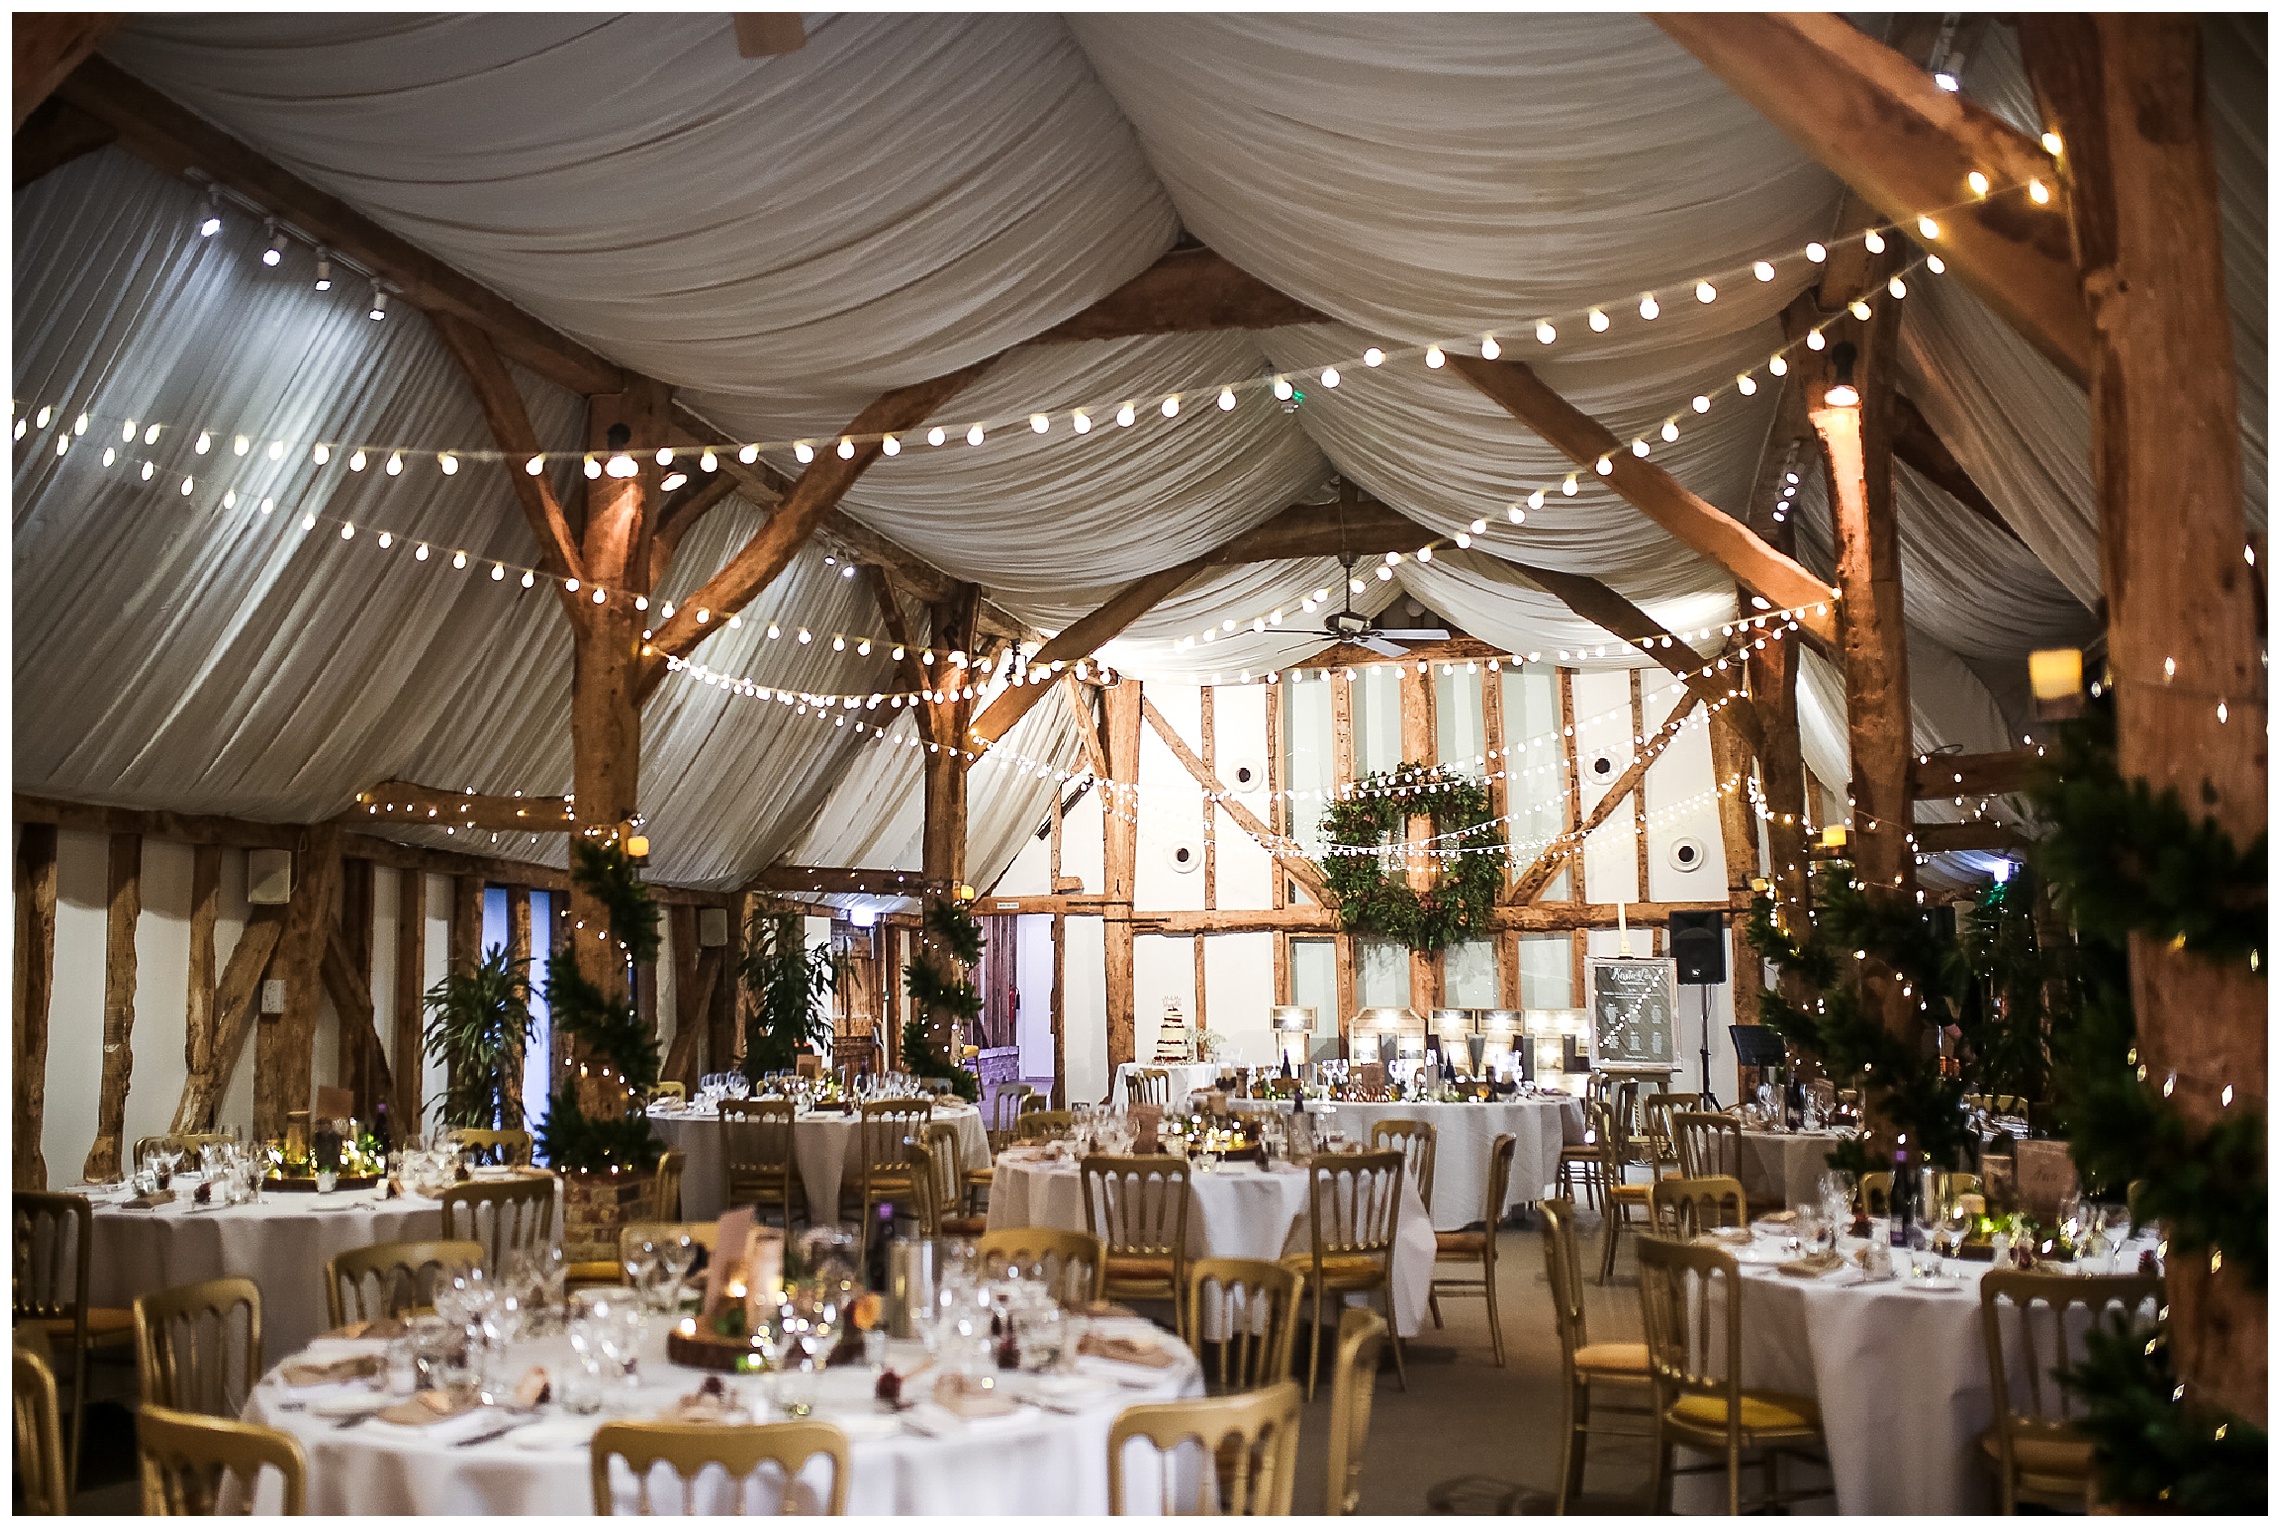 south farm barn wedding venue in royston